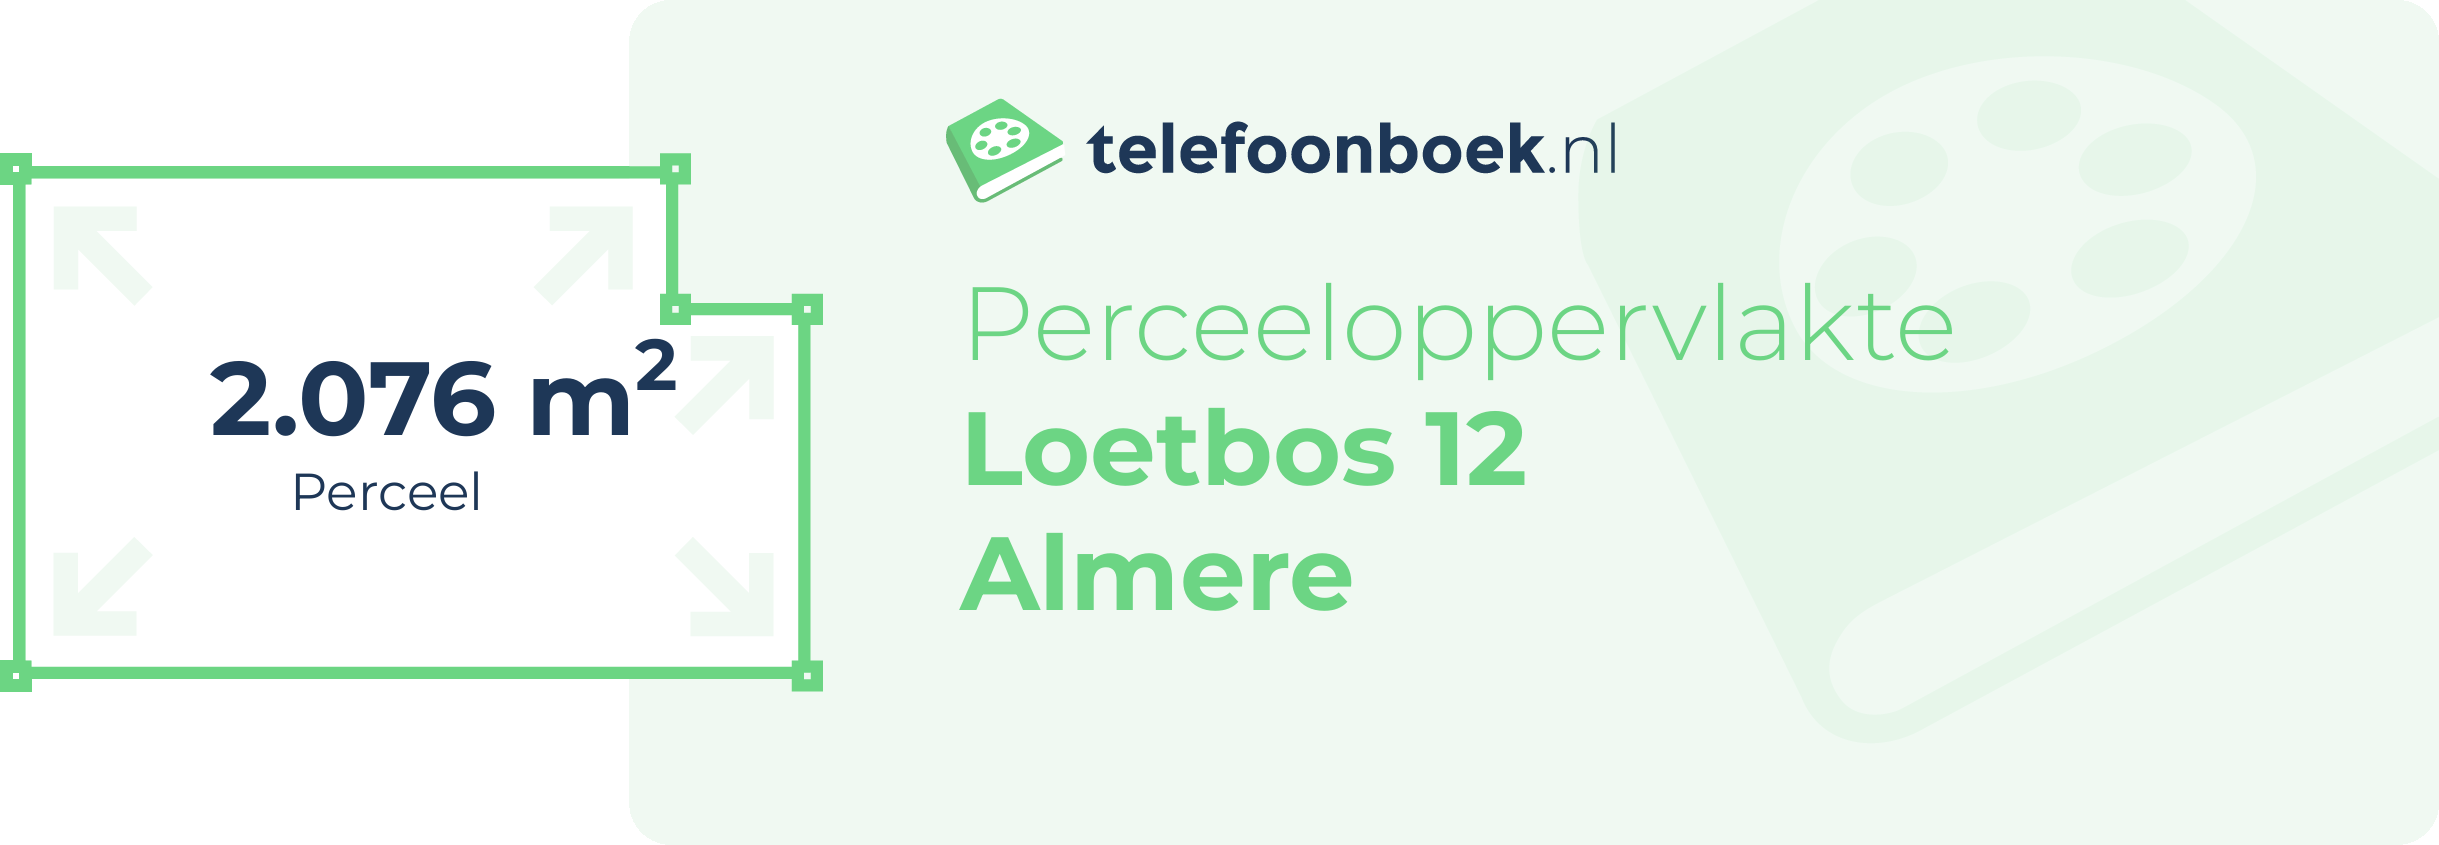 Perceeloppervlakte Loetbos 12 Almere